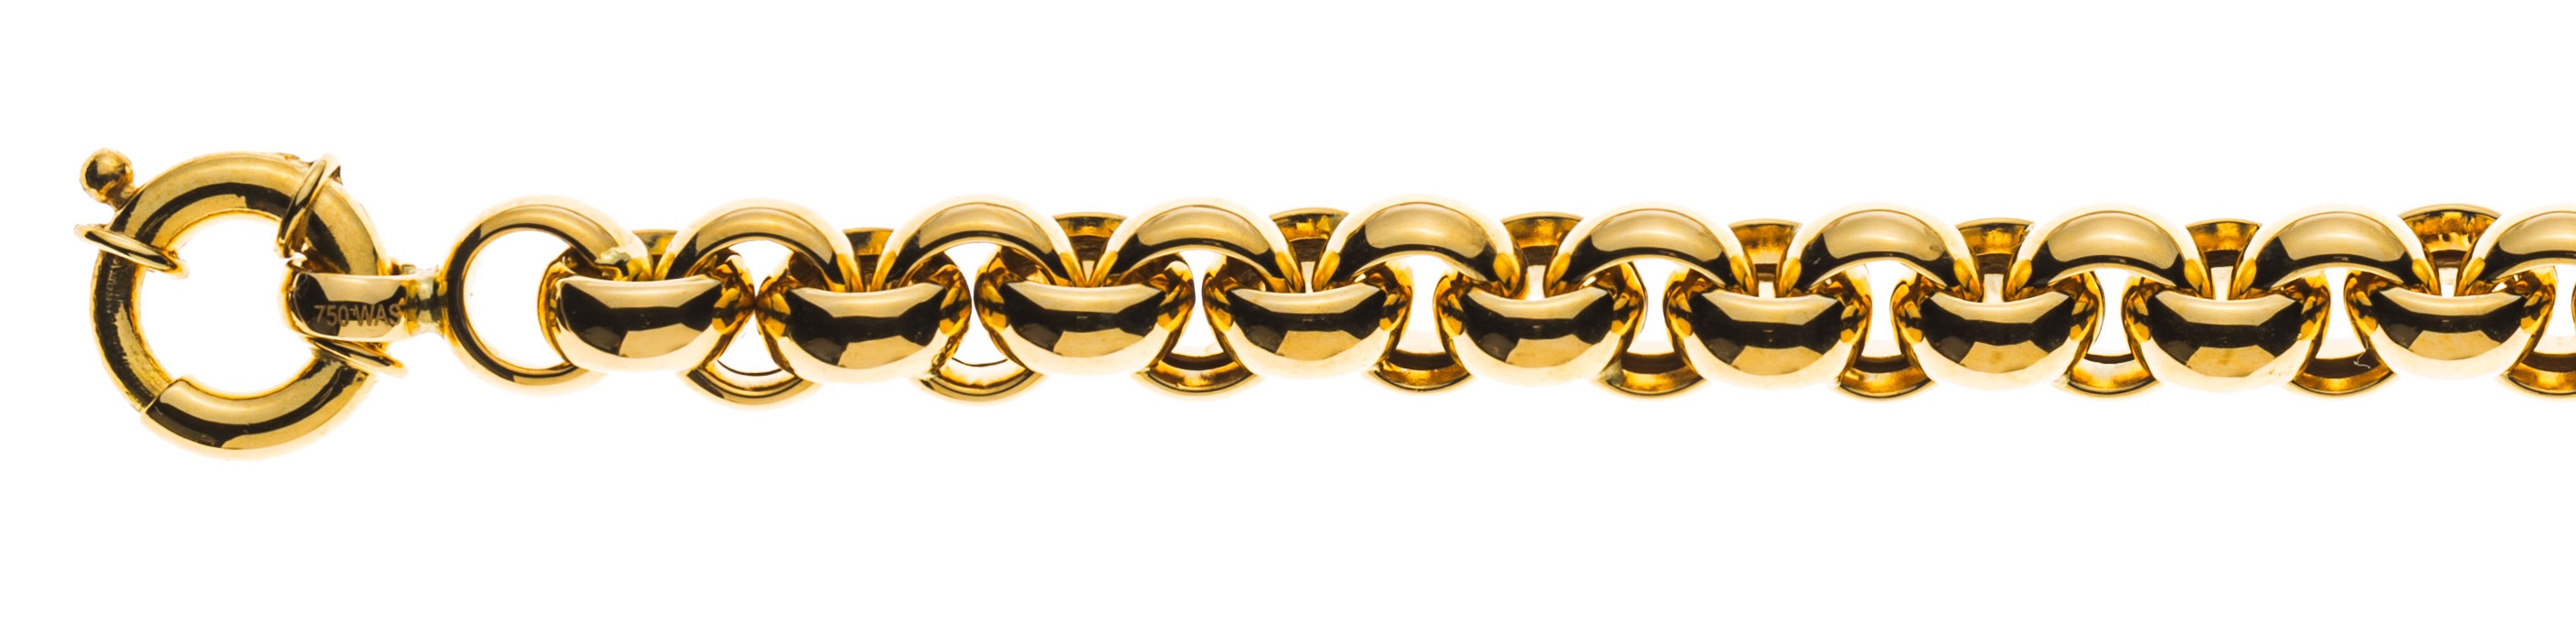 AURONOS Prestige Necklace yellow gold 18K semi-solid pea chain 50cm 7mm